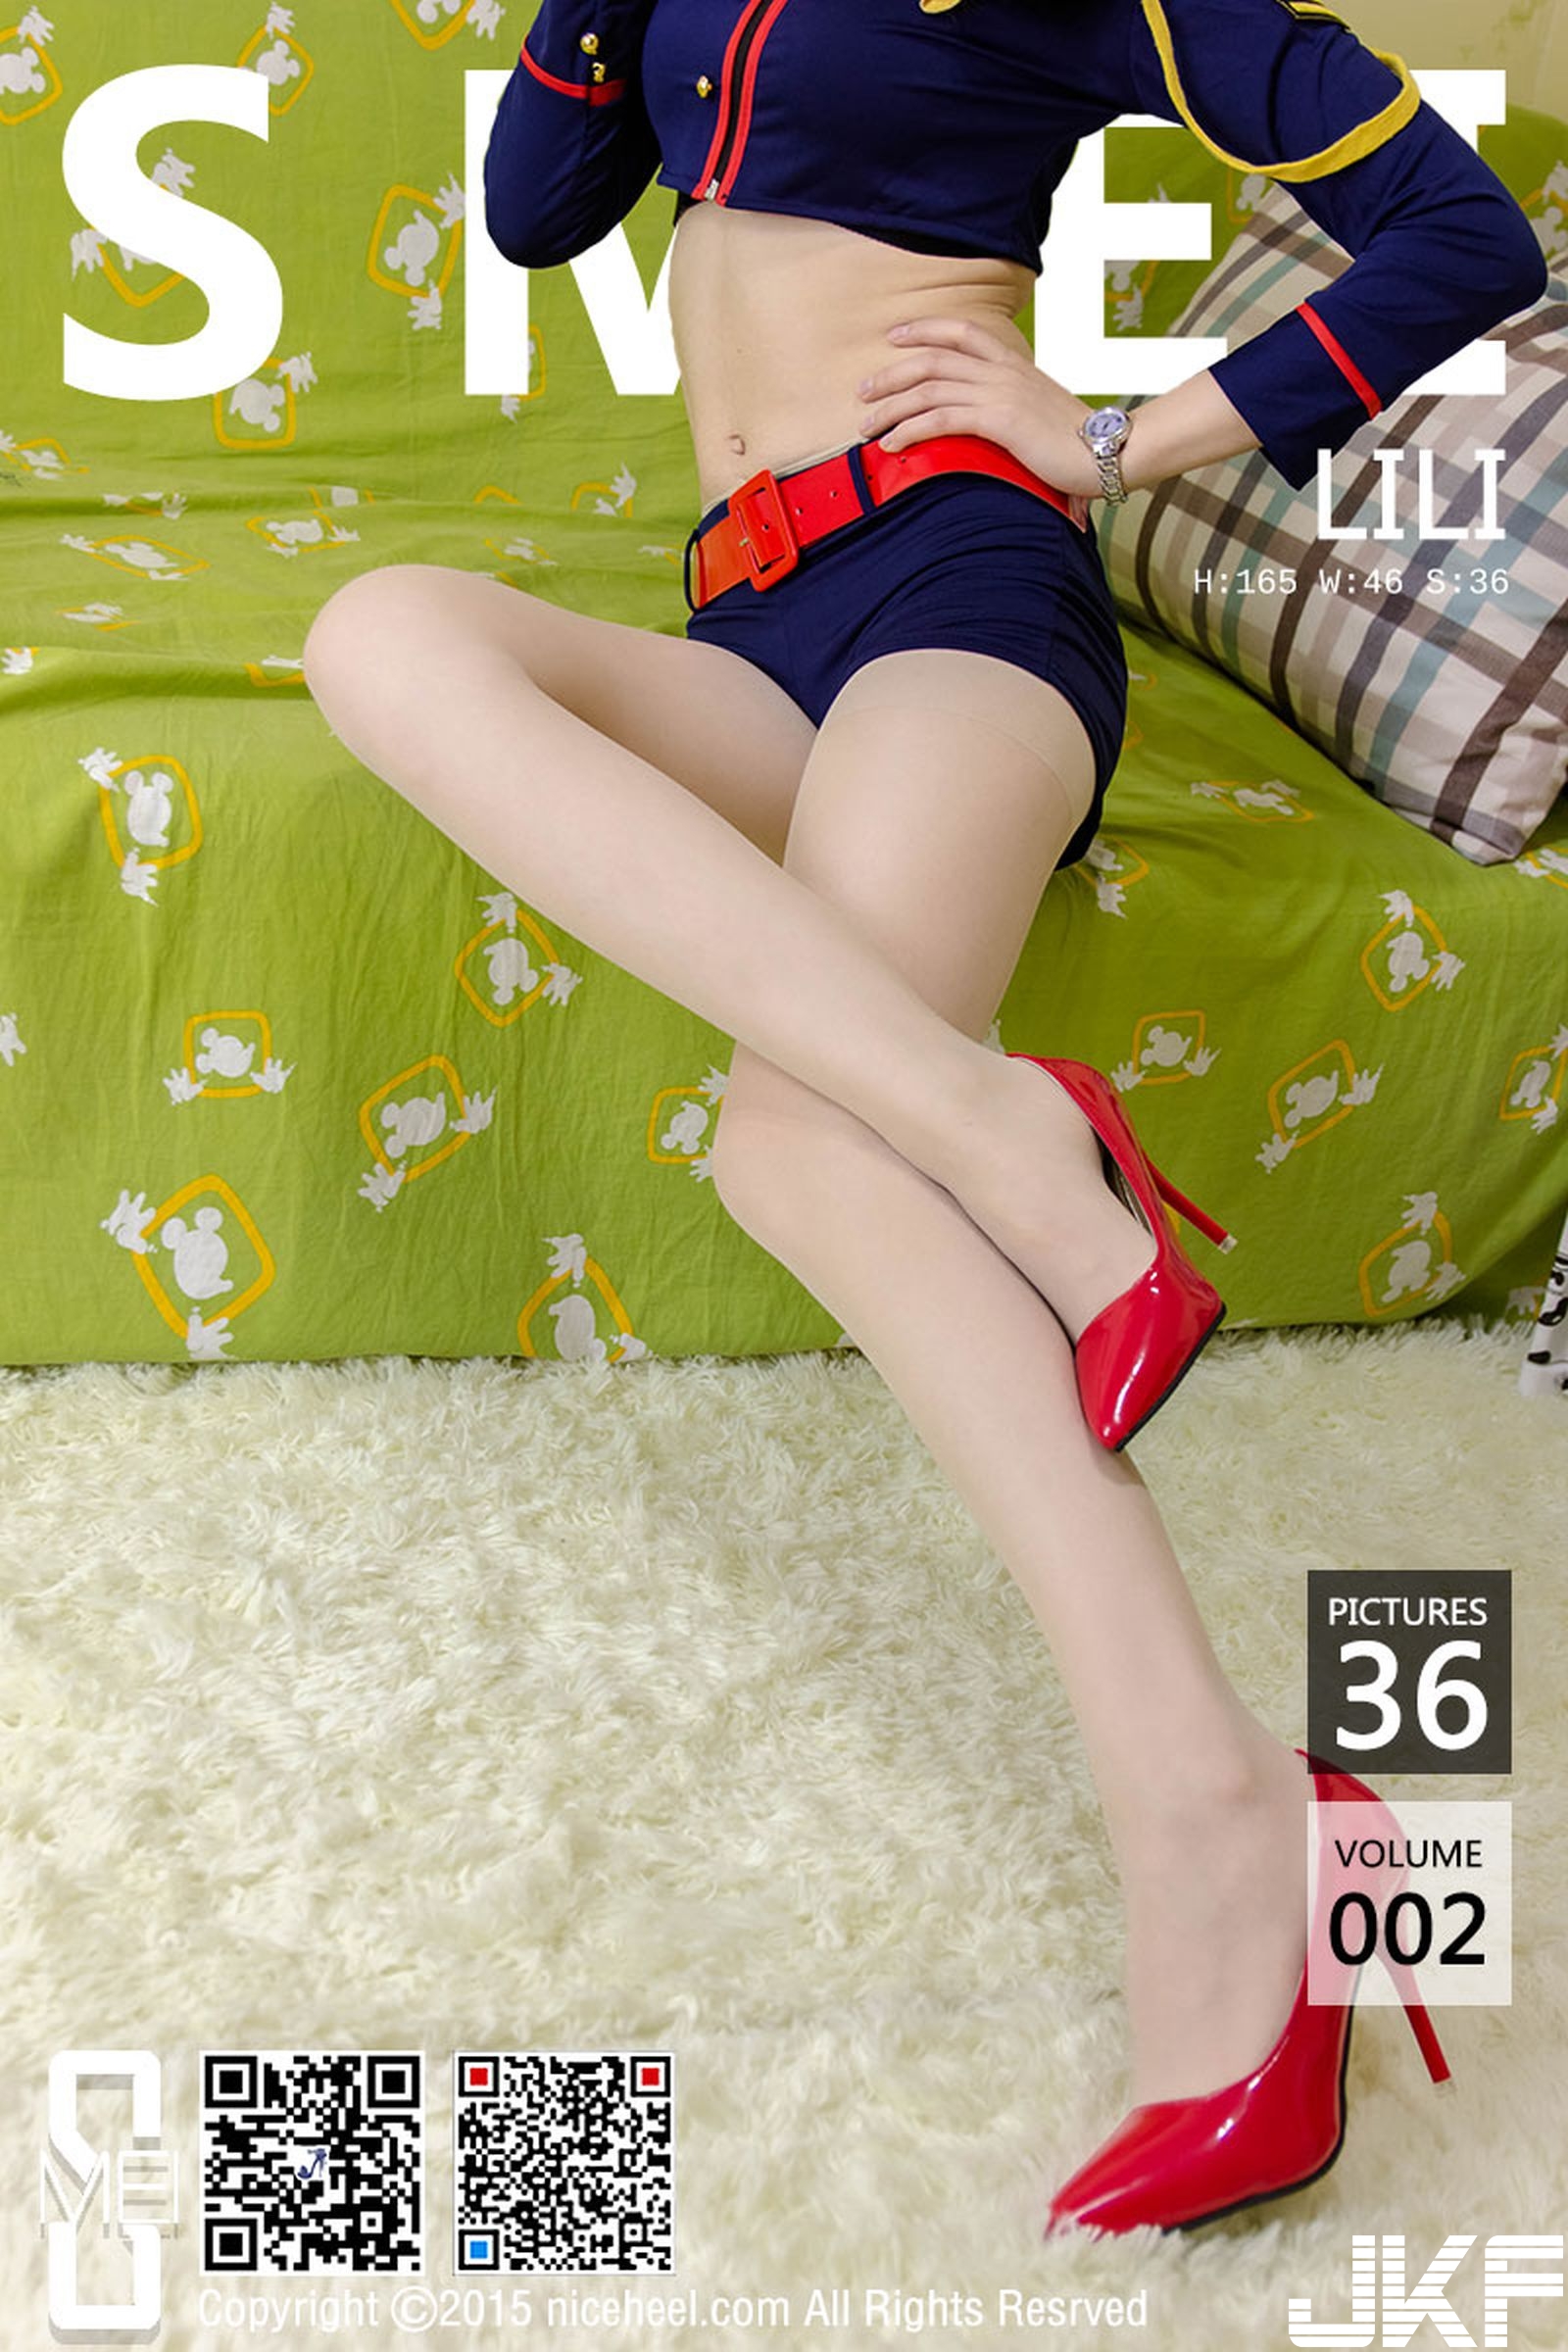 【SMEI秀美系列】NO.002 LILI 肉絲高跟美腿 【37P】 - 貼圖 - 絲襪美腿 -